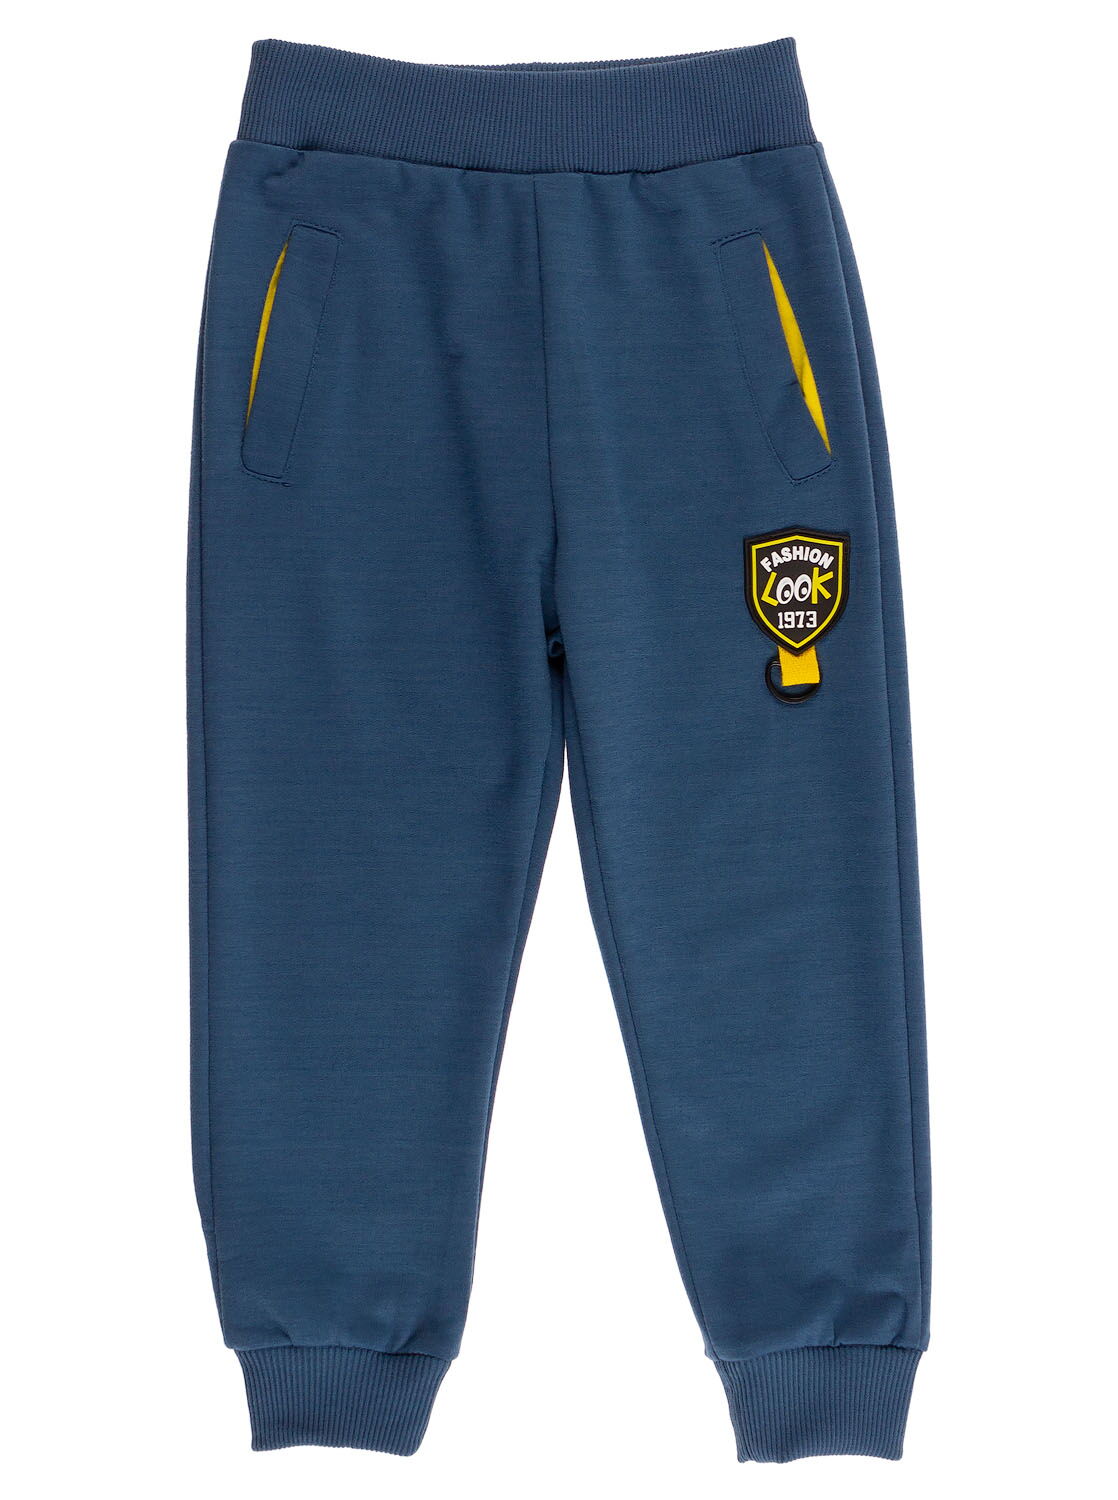 Спортивные штаны для мальчика Sincere синие 2309 - цена